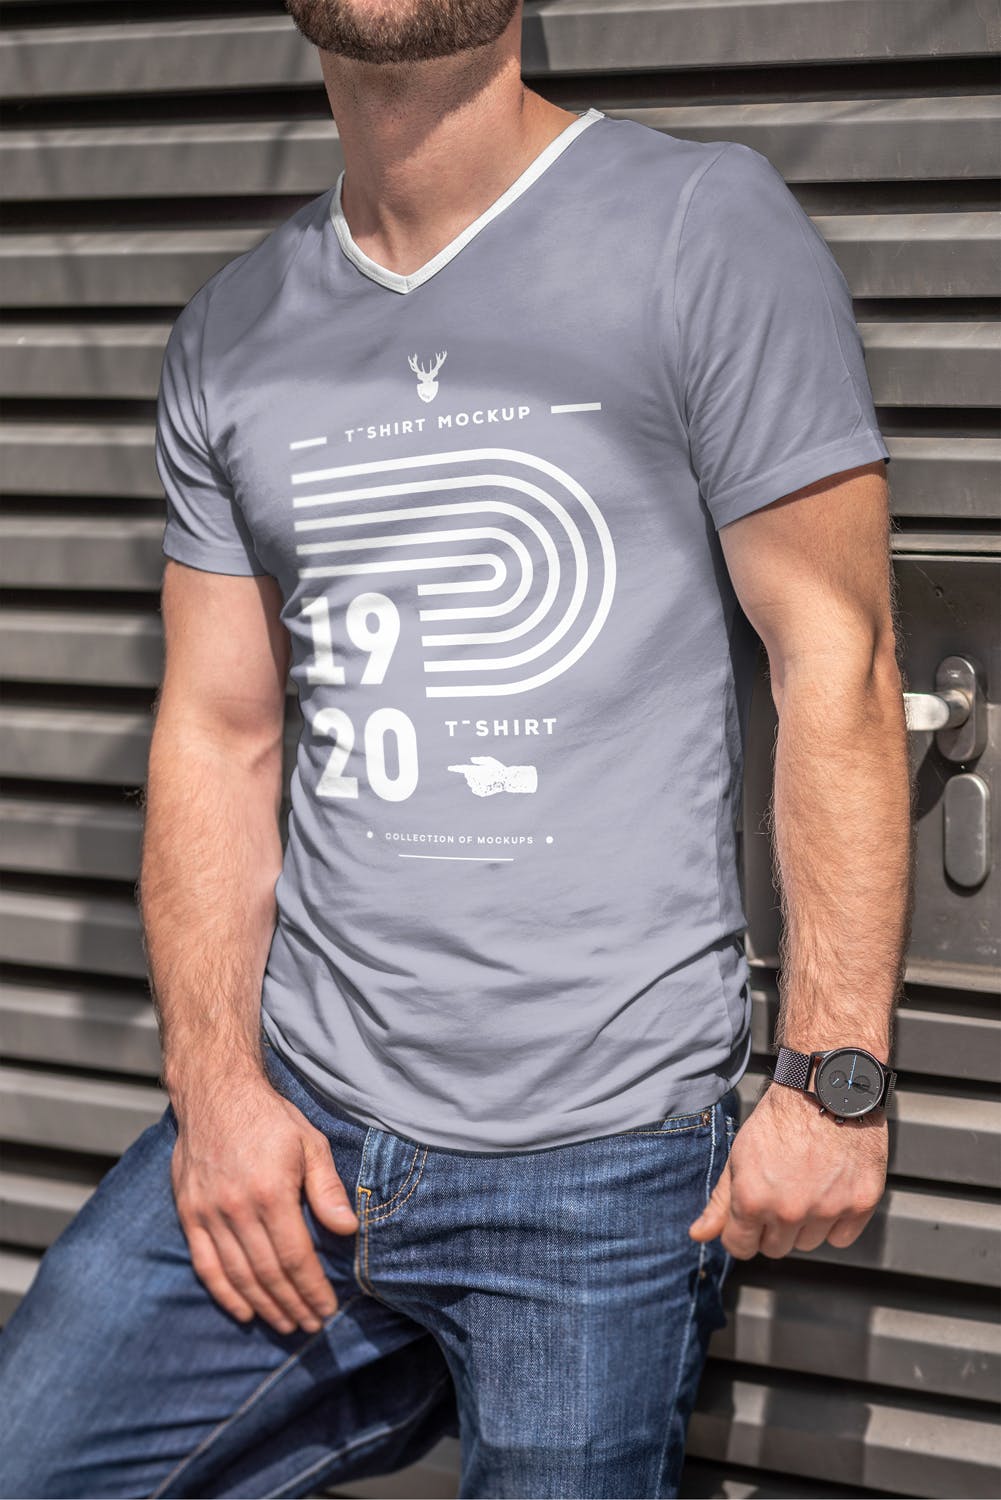 男士印花T恤真实模特上身效果图样机素材中国精选模板 T-Shirt Mock-up 5插图(7)